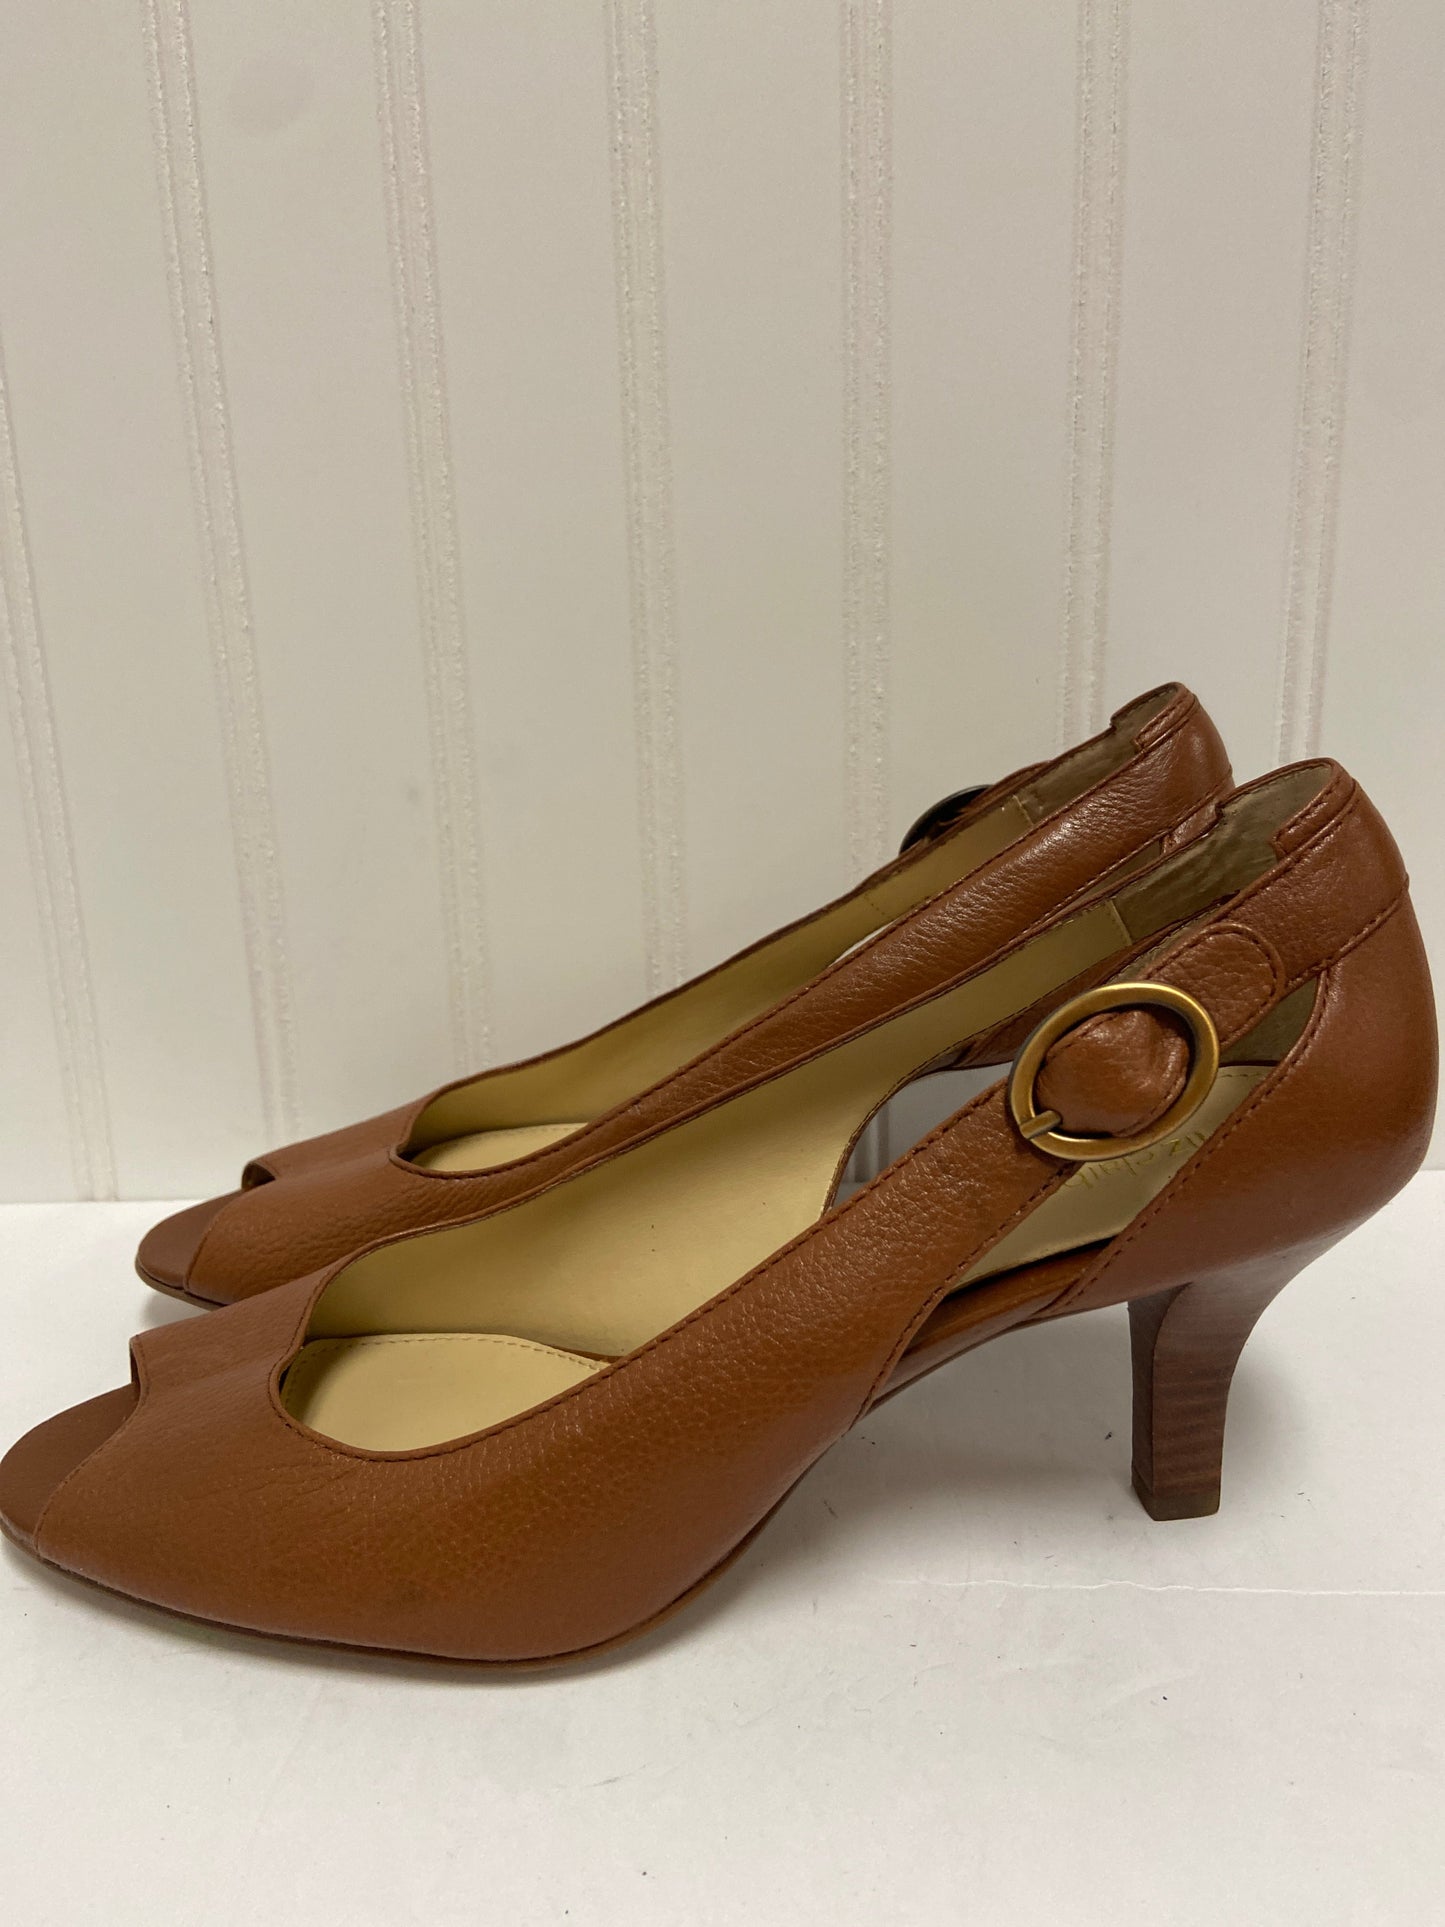 Sandals Heels Stiletto By Liz Claiborne  Size: 8